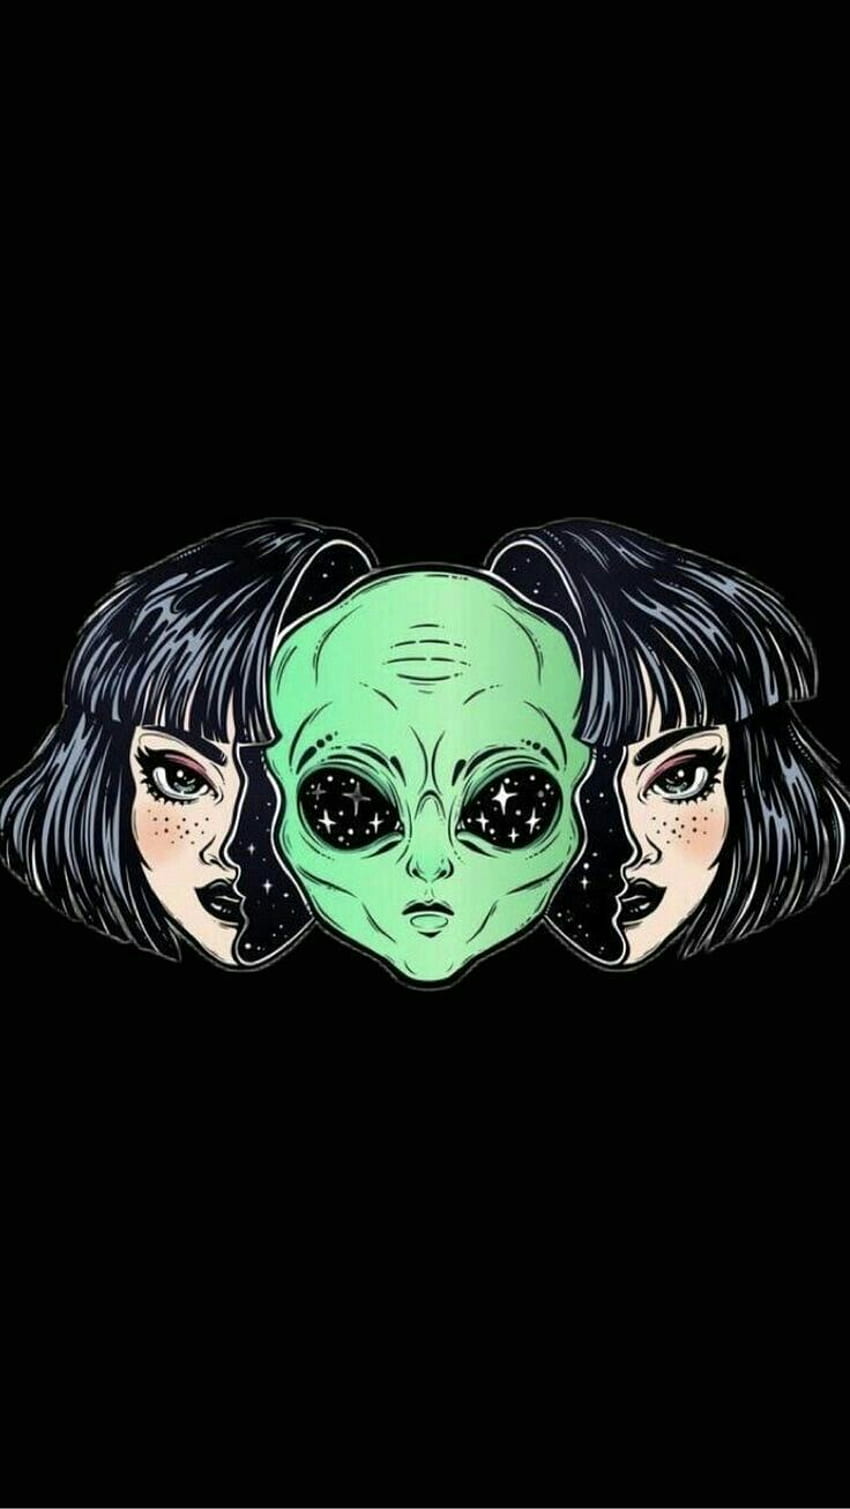 Aesthetic ⭐.. in 2021. Alien aesthetic, Alien art, Psychedelic art, Kawaii  Grunge Alien Girl HD phone wallpaper | Pxfuel